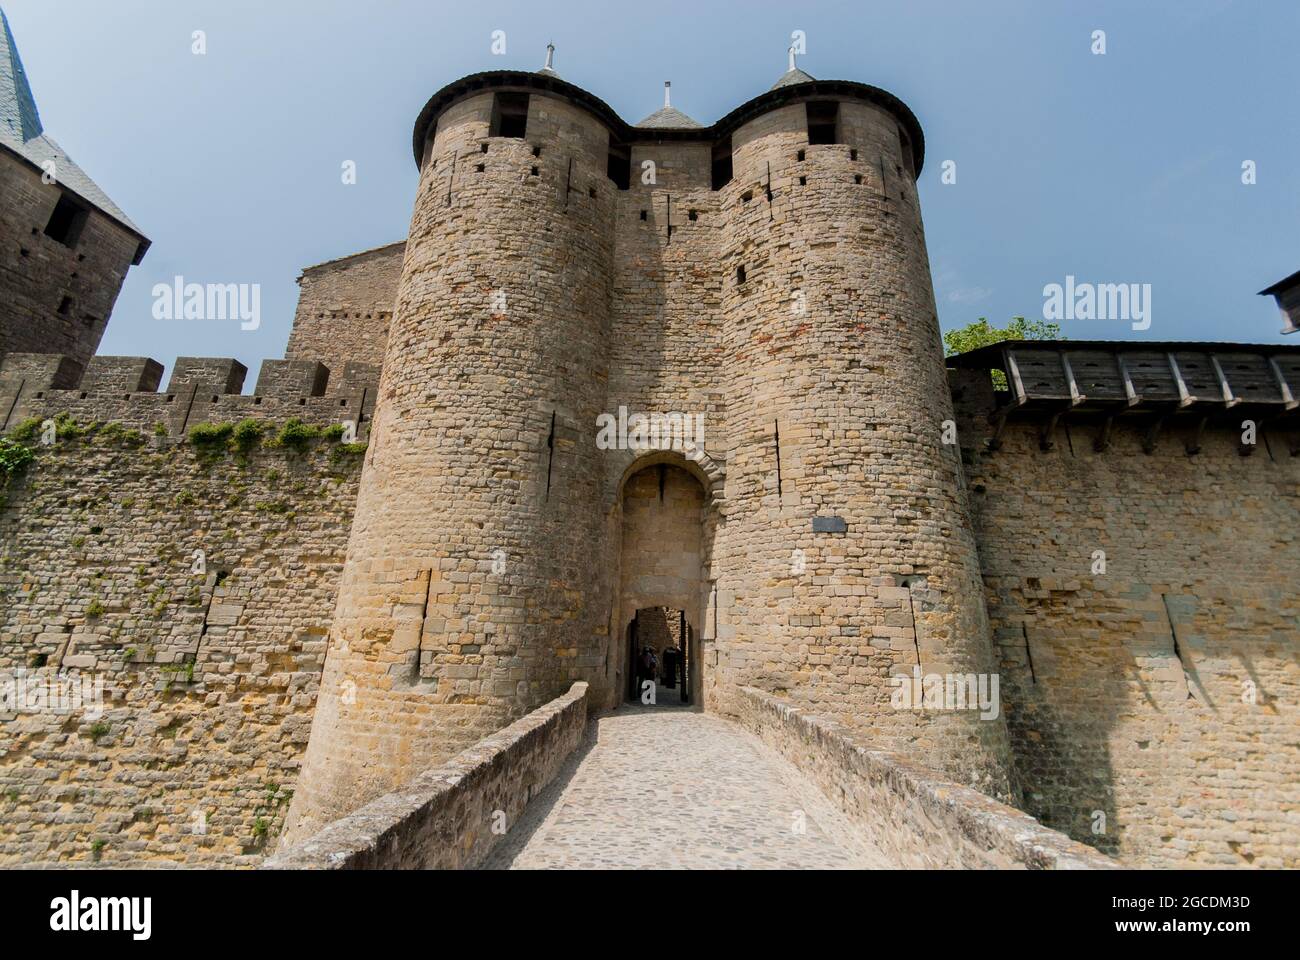 La porte du château intérieur de la cité médiévale fortifiée de Carcassonne avec ses tours doubles Banque D'Images